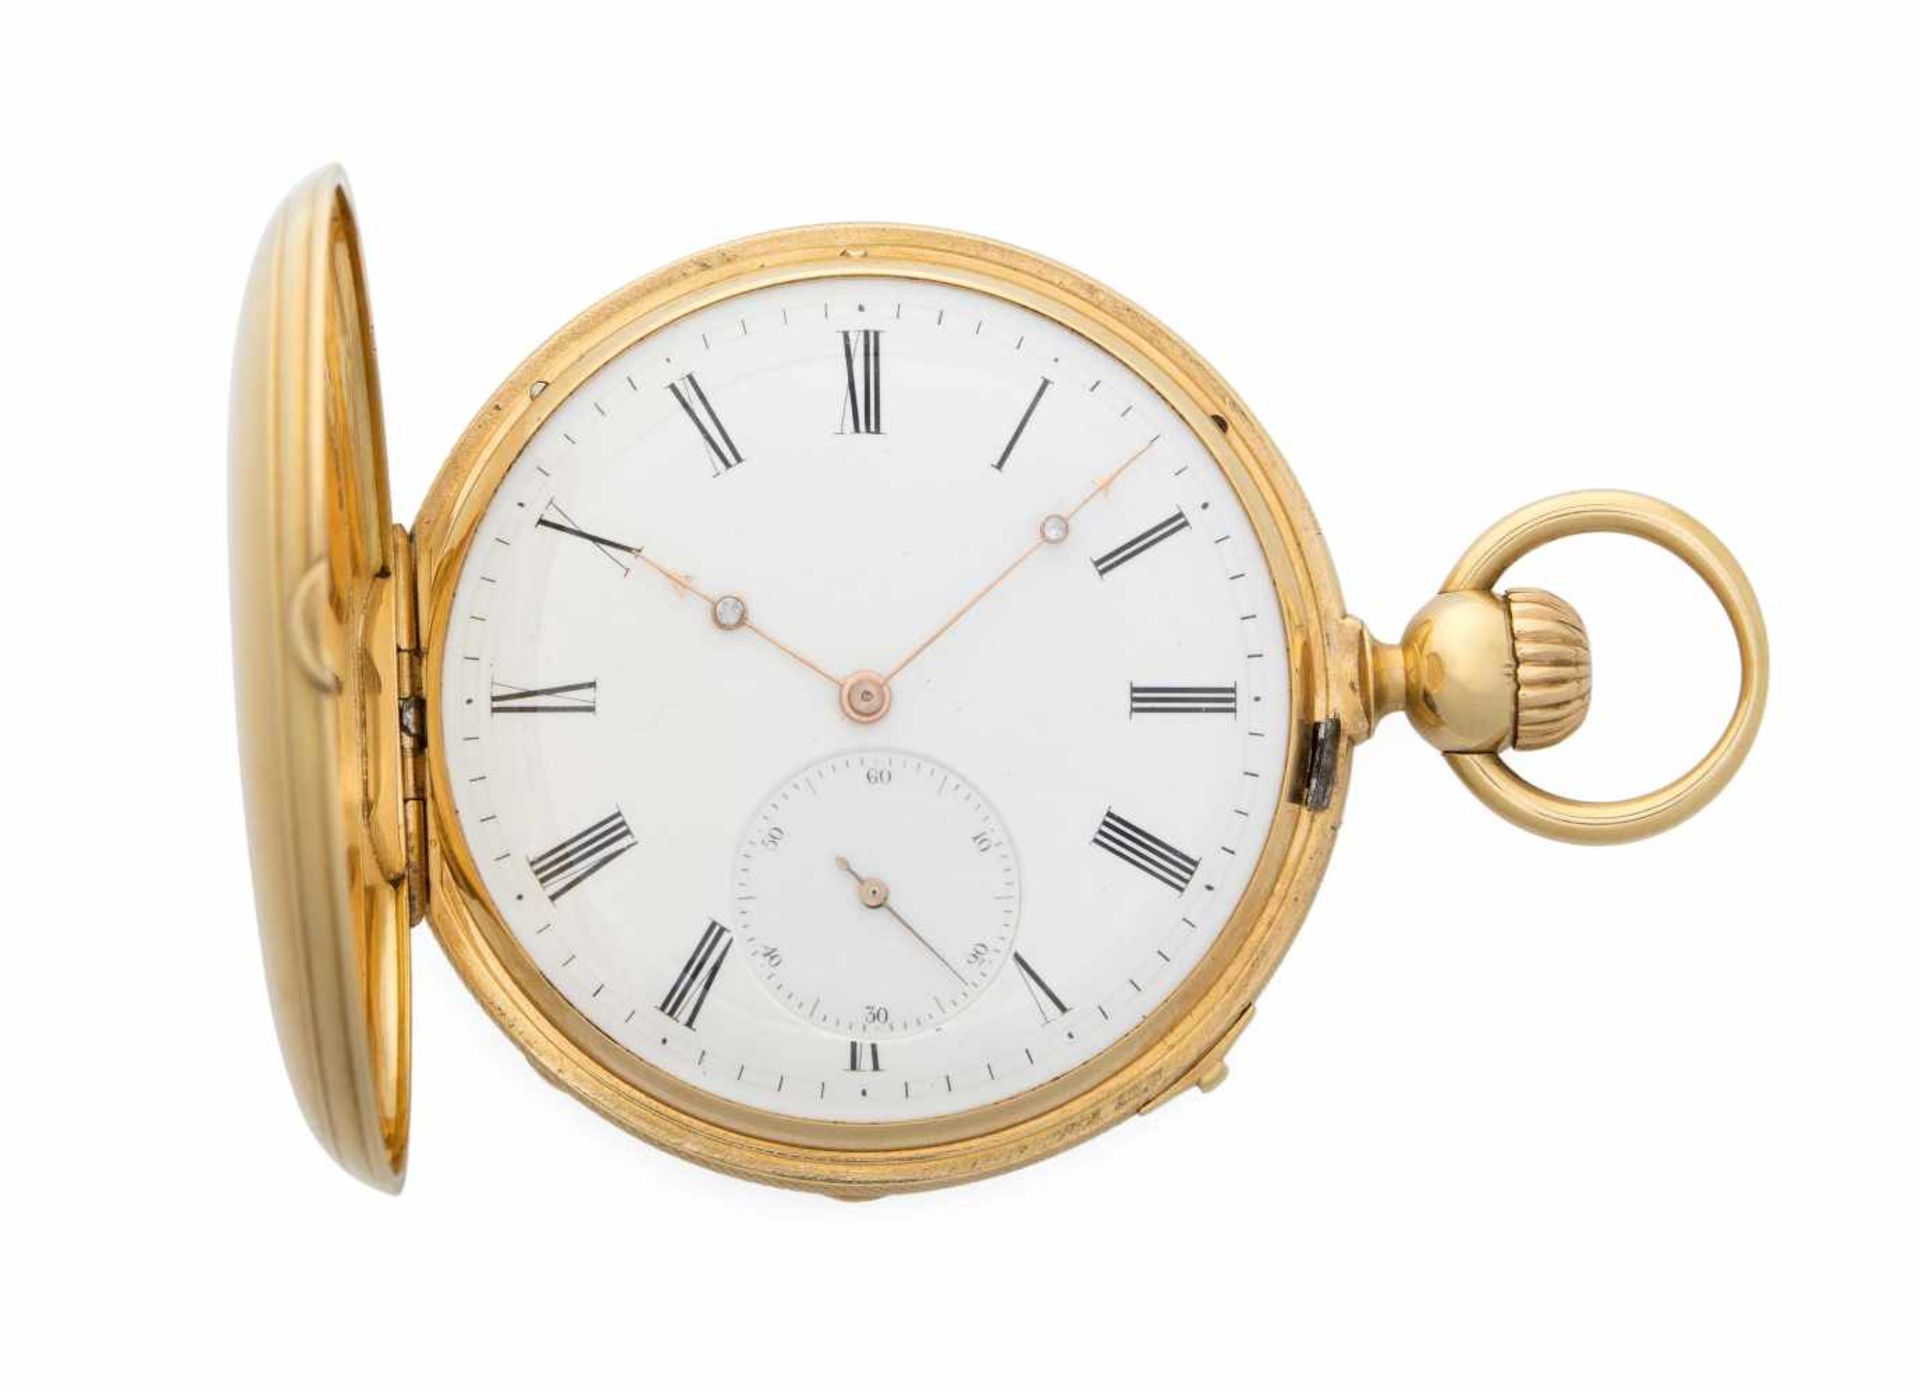 Ulysse Breting SavonnetteRunder, mechanischer Chronometer 20er Jahre mit Handaufzug in 750